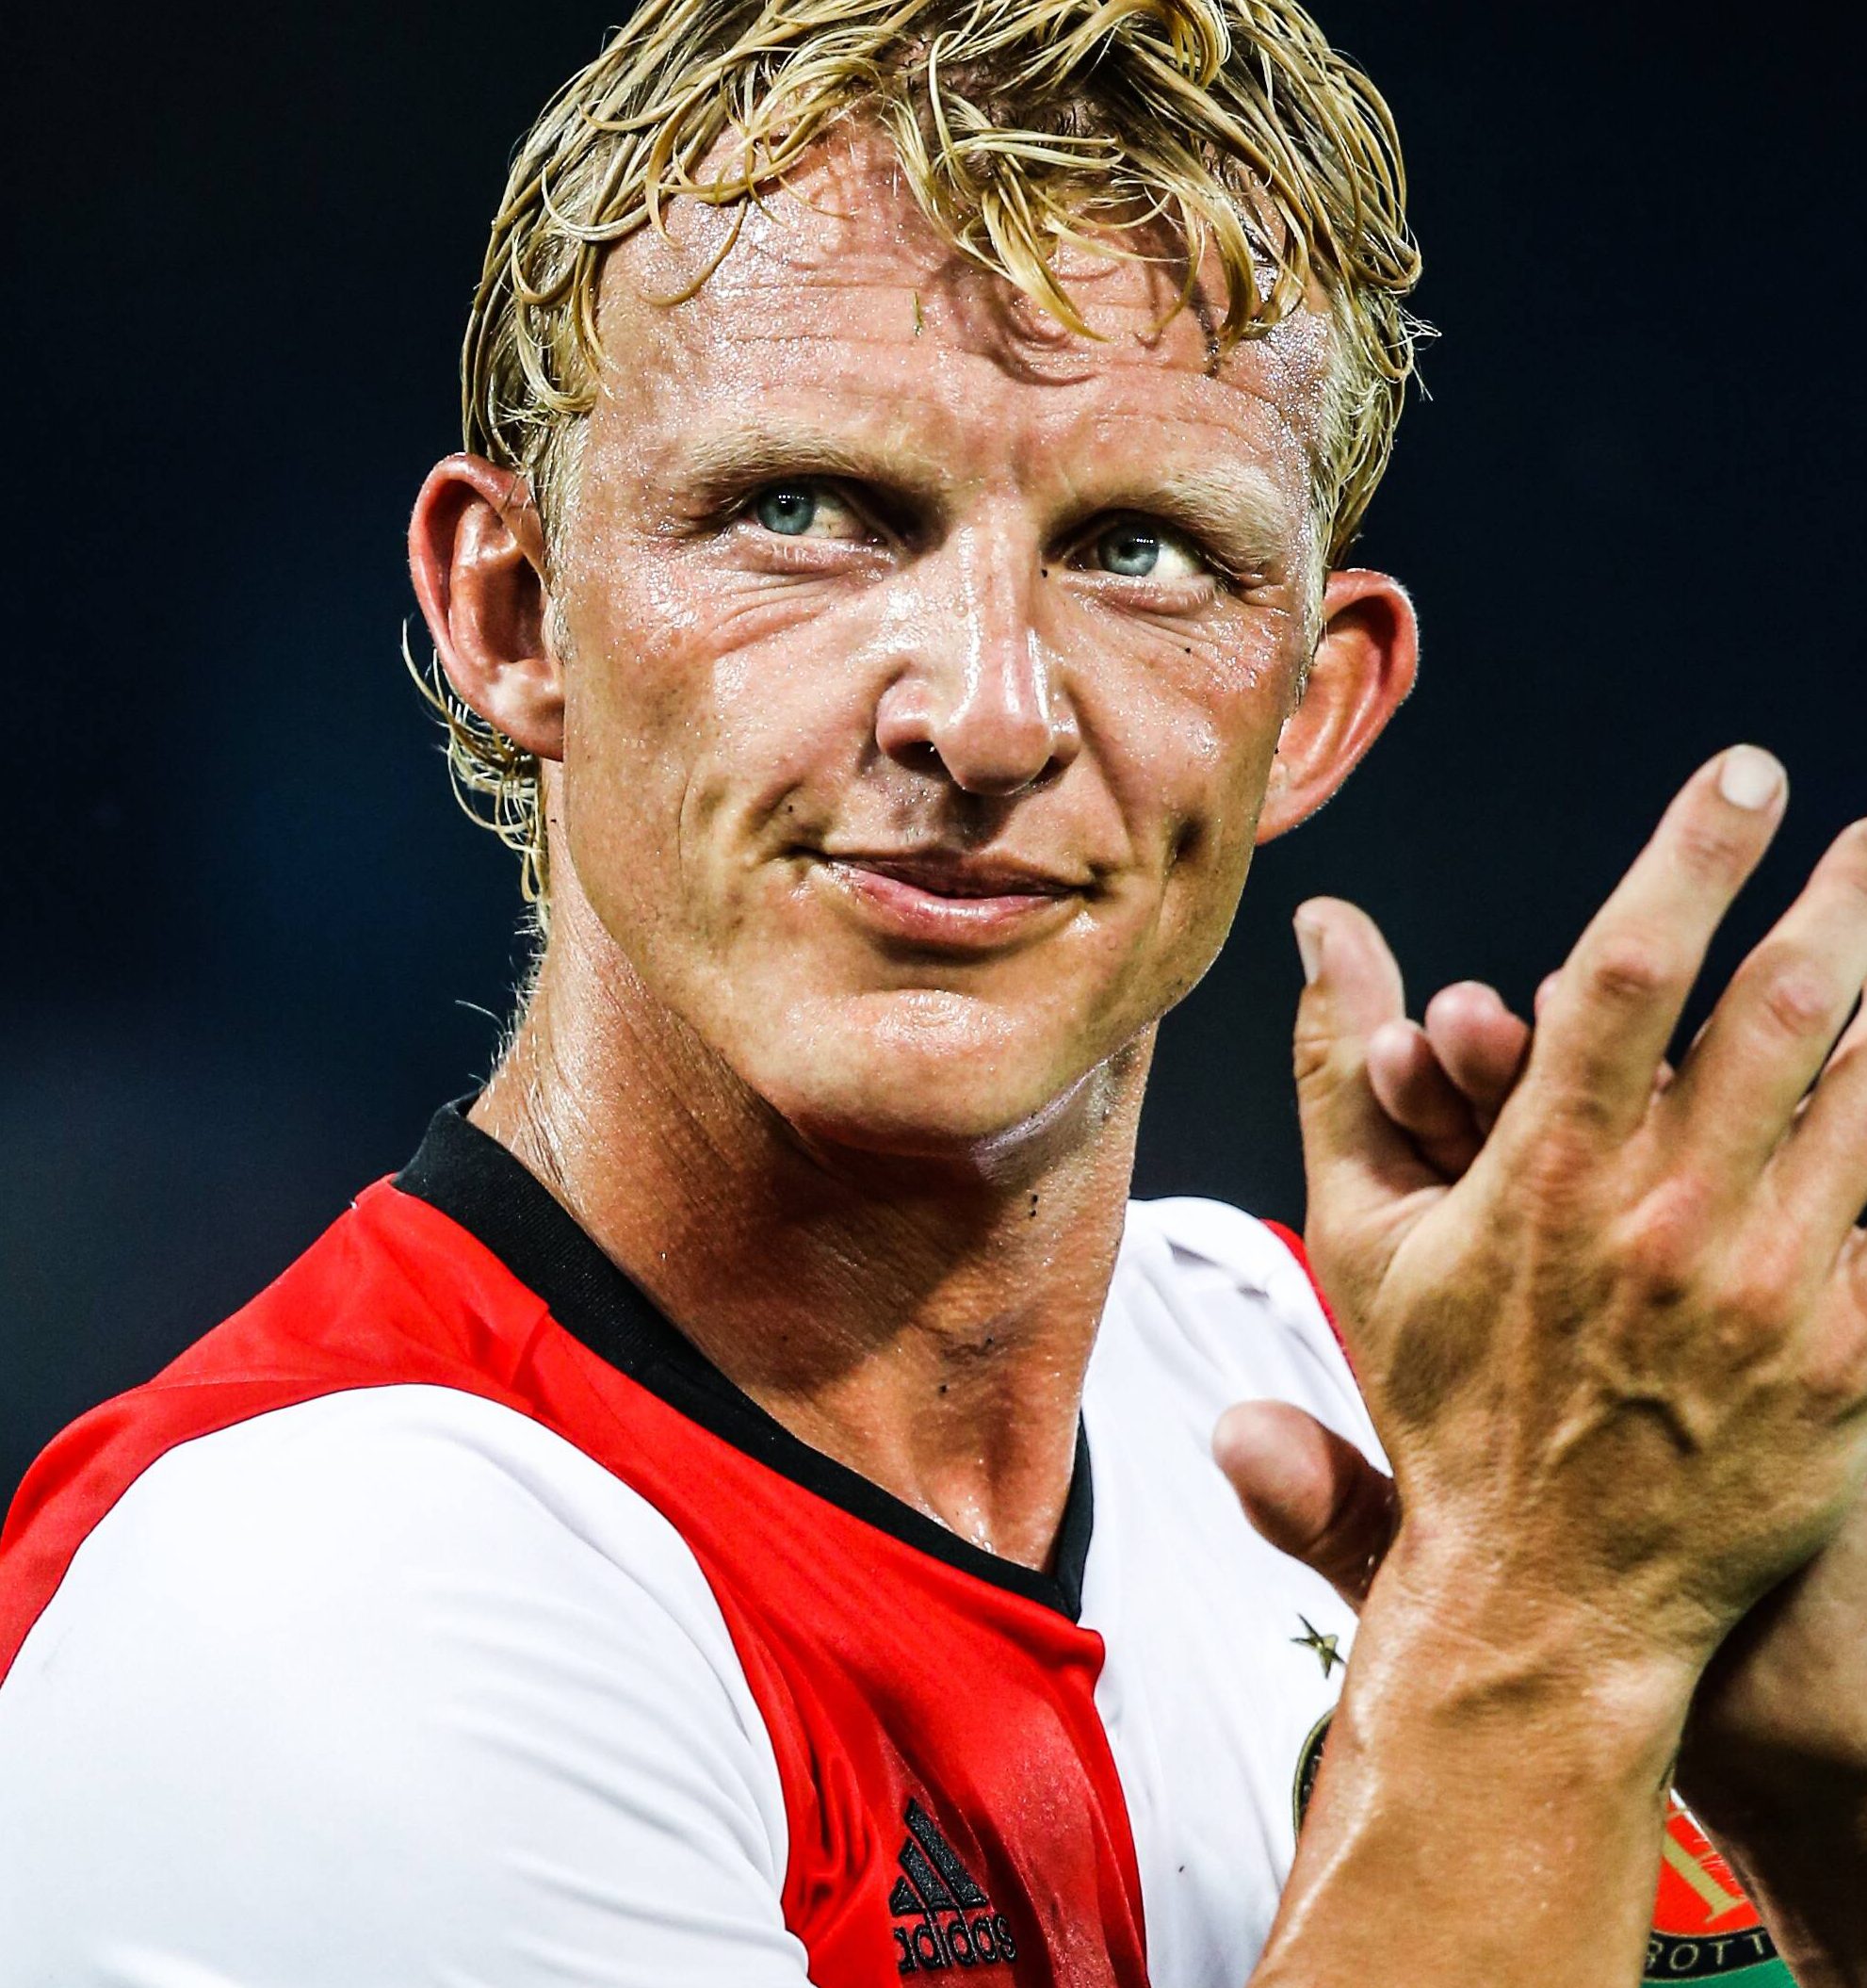 Dirk Kuyt nach einem Freundschaftsspiel zwischen Feyenoord und Valencia.